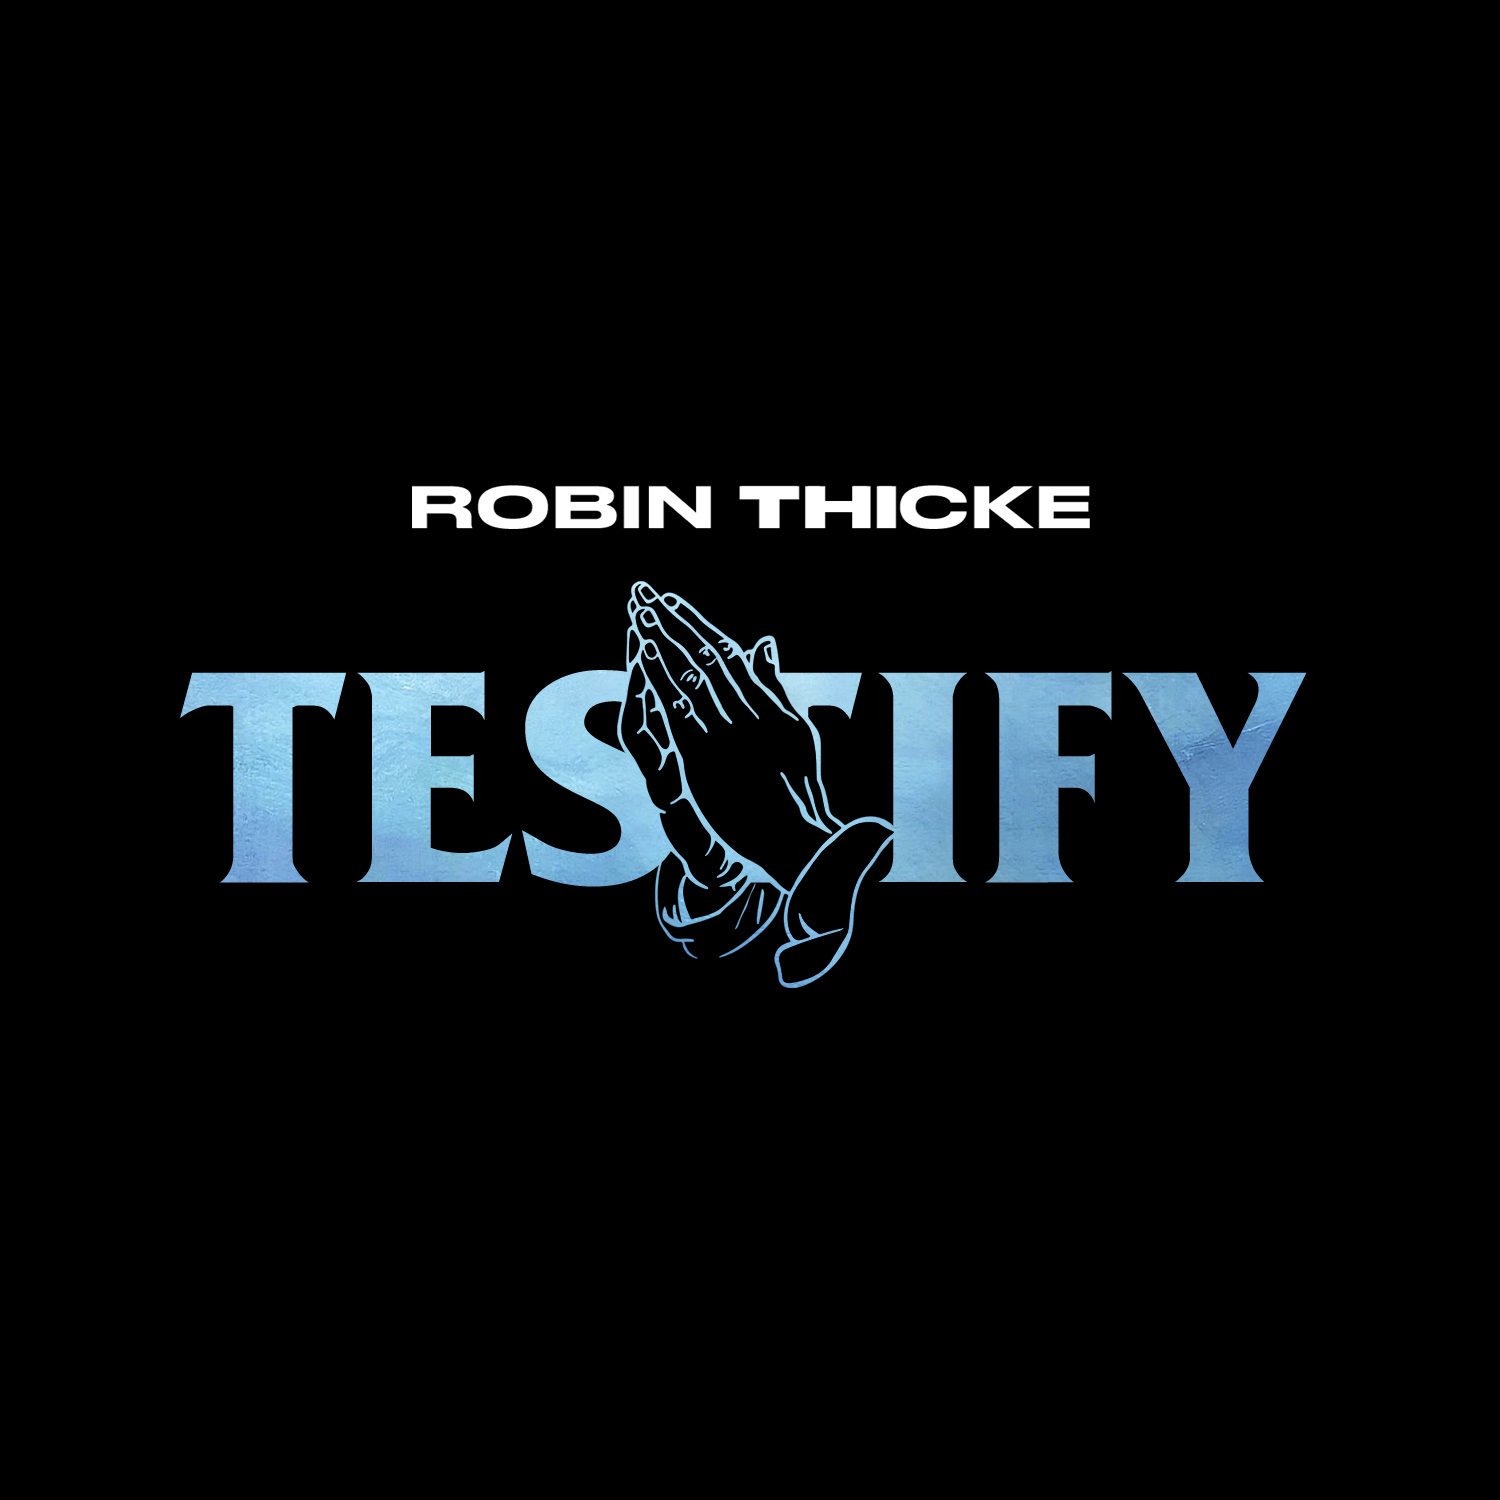 ROBIN THICKE testify album cover